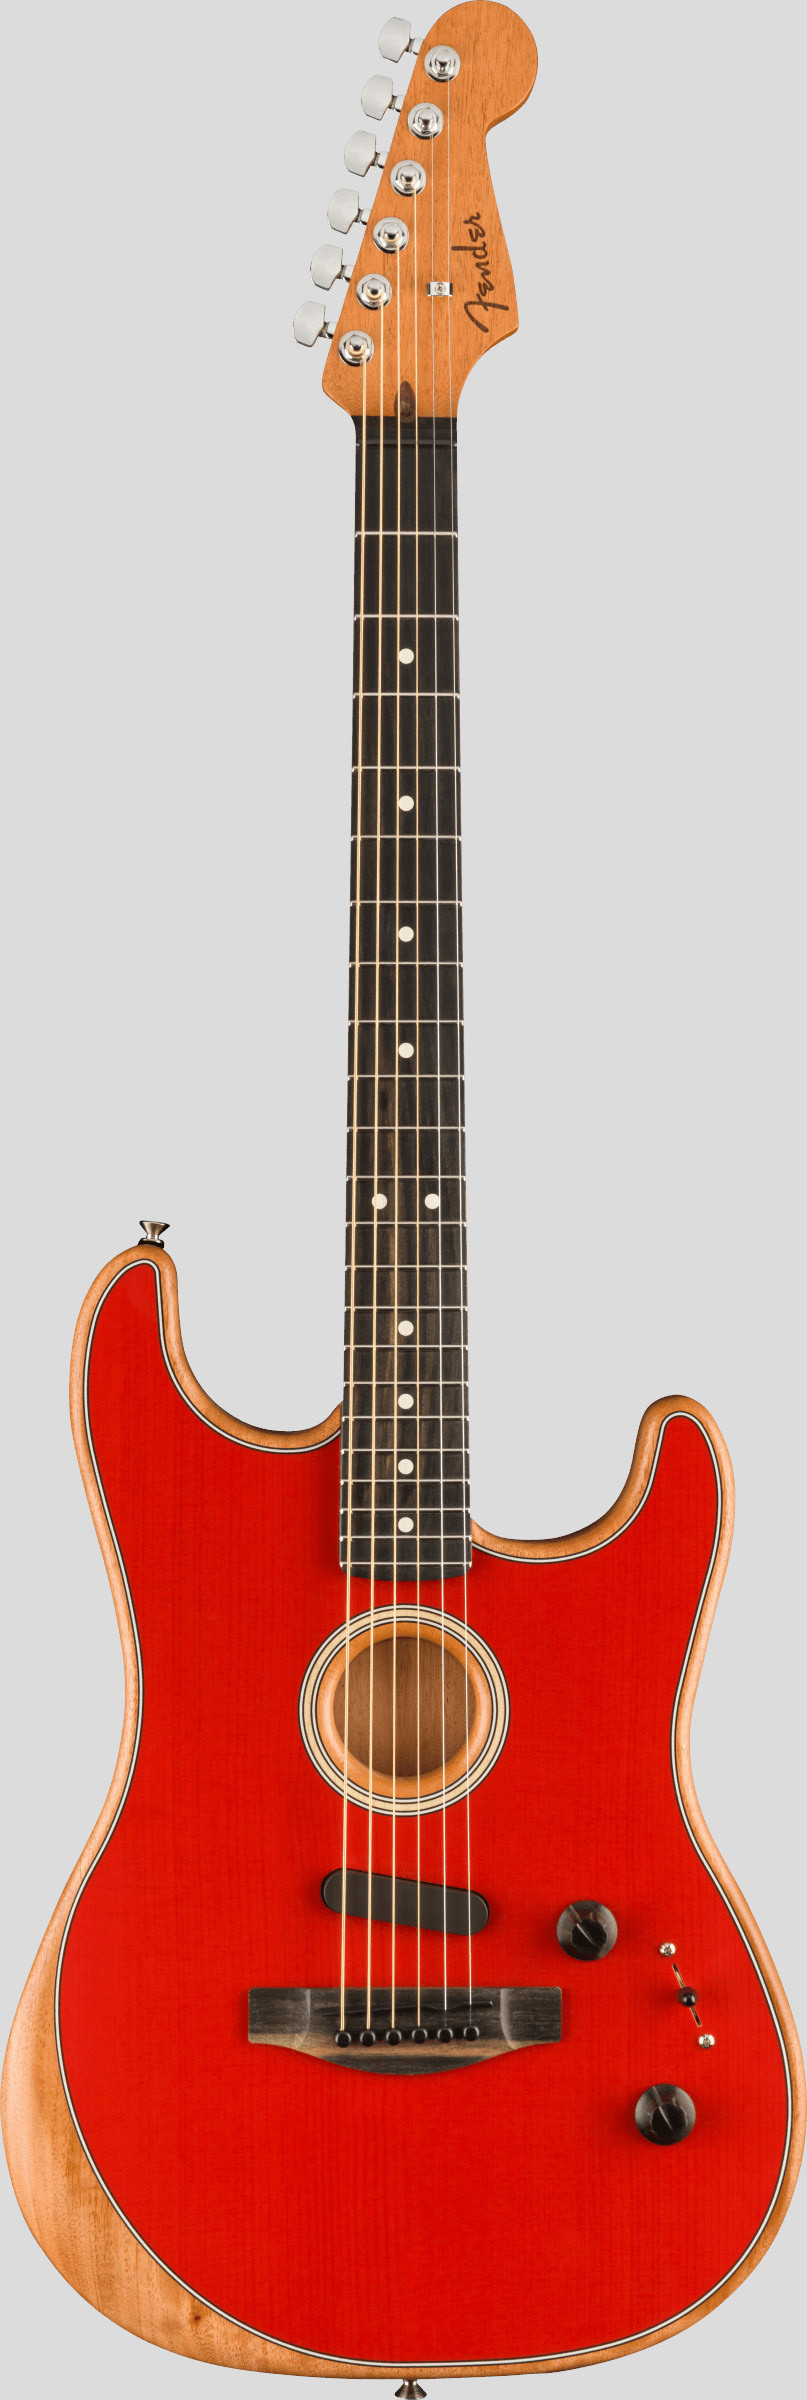 Fender American Acoustasonic Stratocaster Dakota Red 1